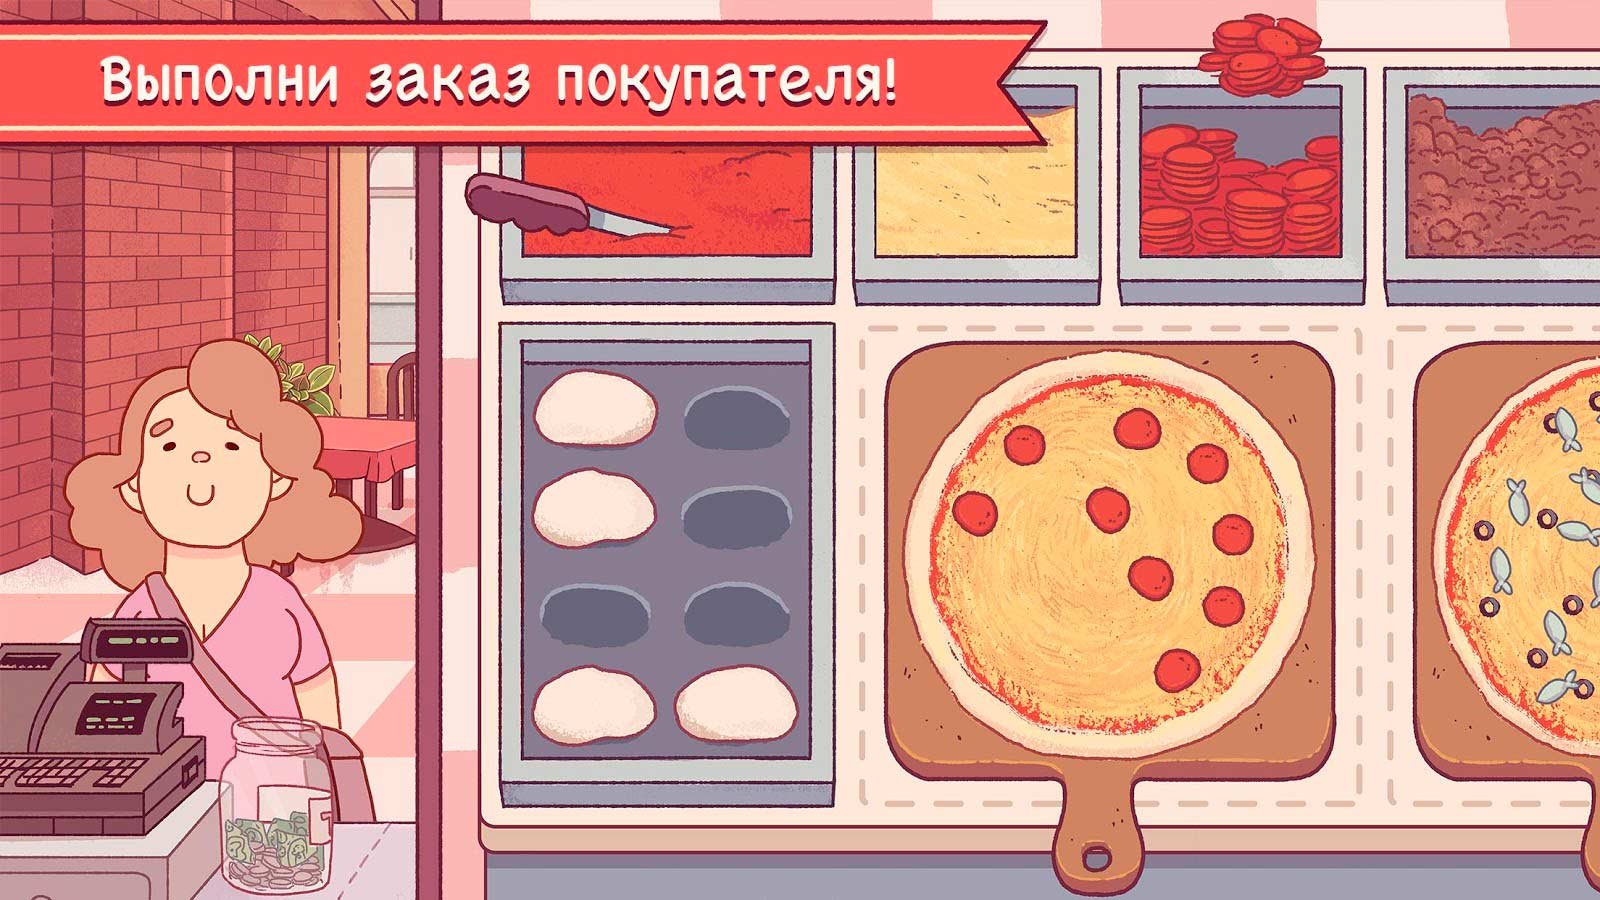 пицца игра скачать бесплатно на андроид фото 7